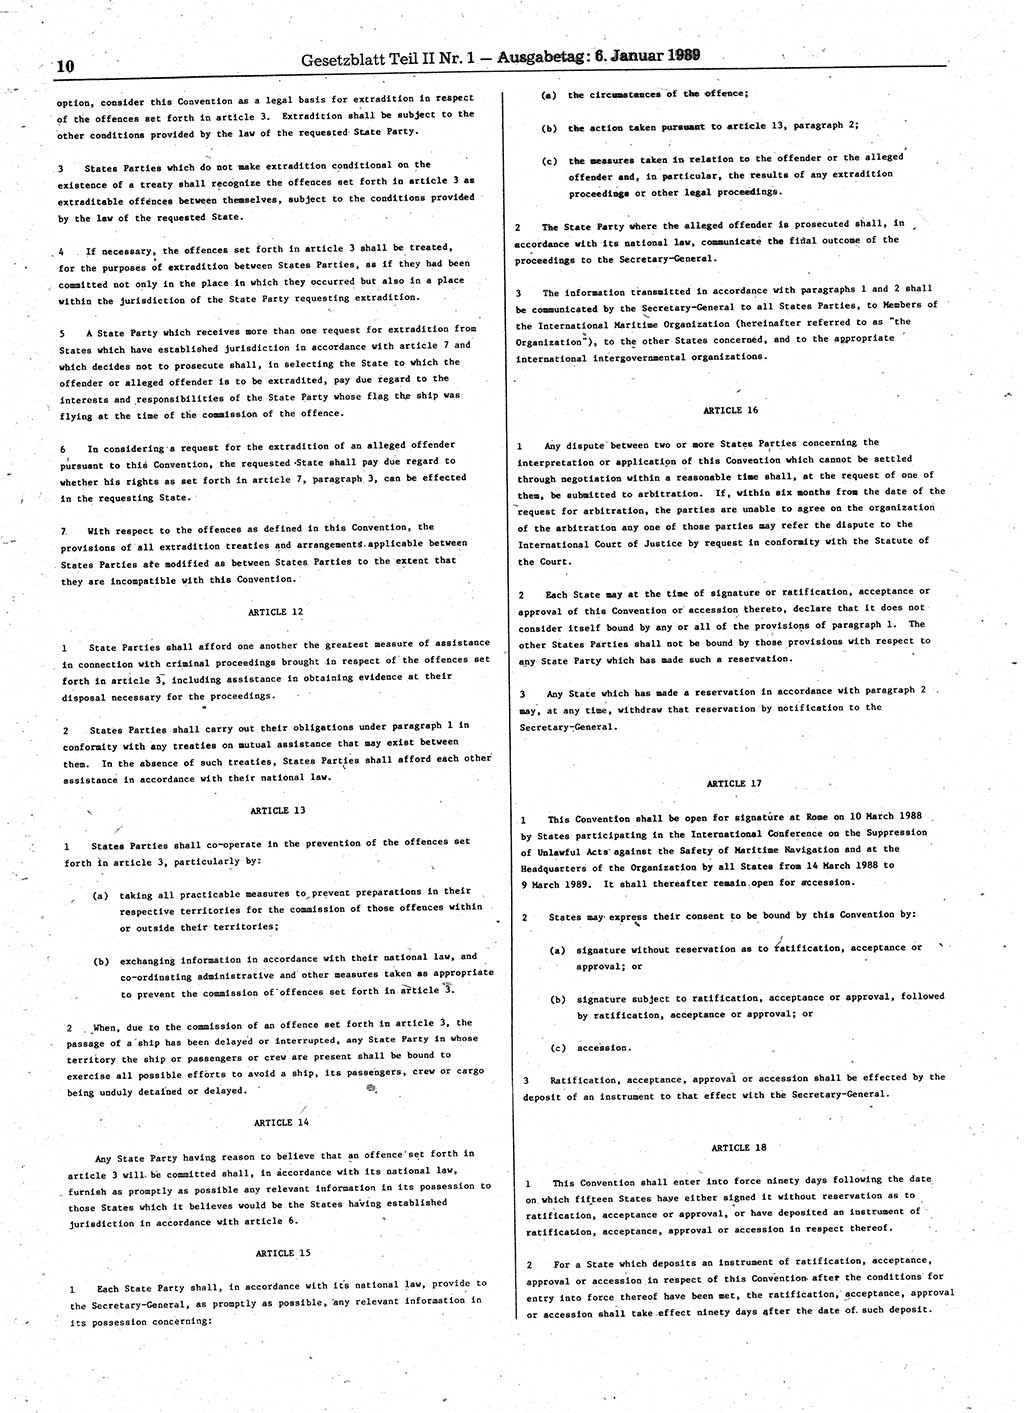 Gesetzblatt (GBl.) der Deutschen Demokratischen Republik (DDR) Teil ⅠⅠ 1989, Seite 10 (GBl. DDR ⅠⅠ 1989, S. 10)